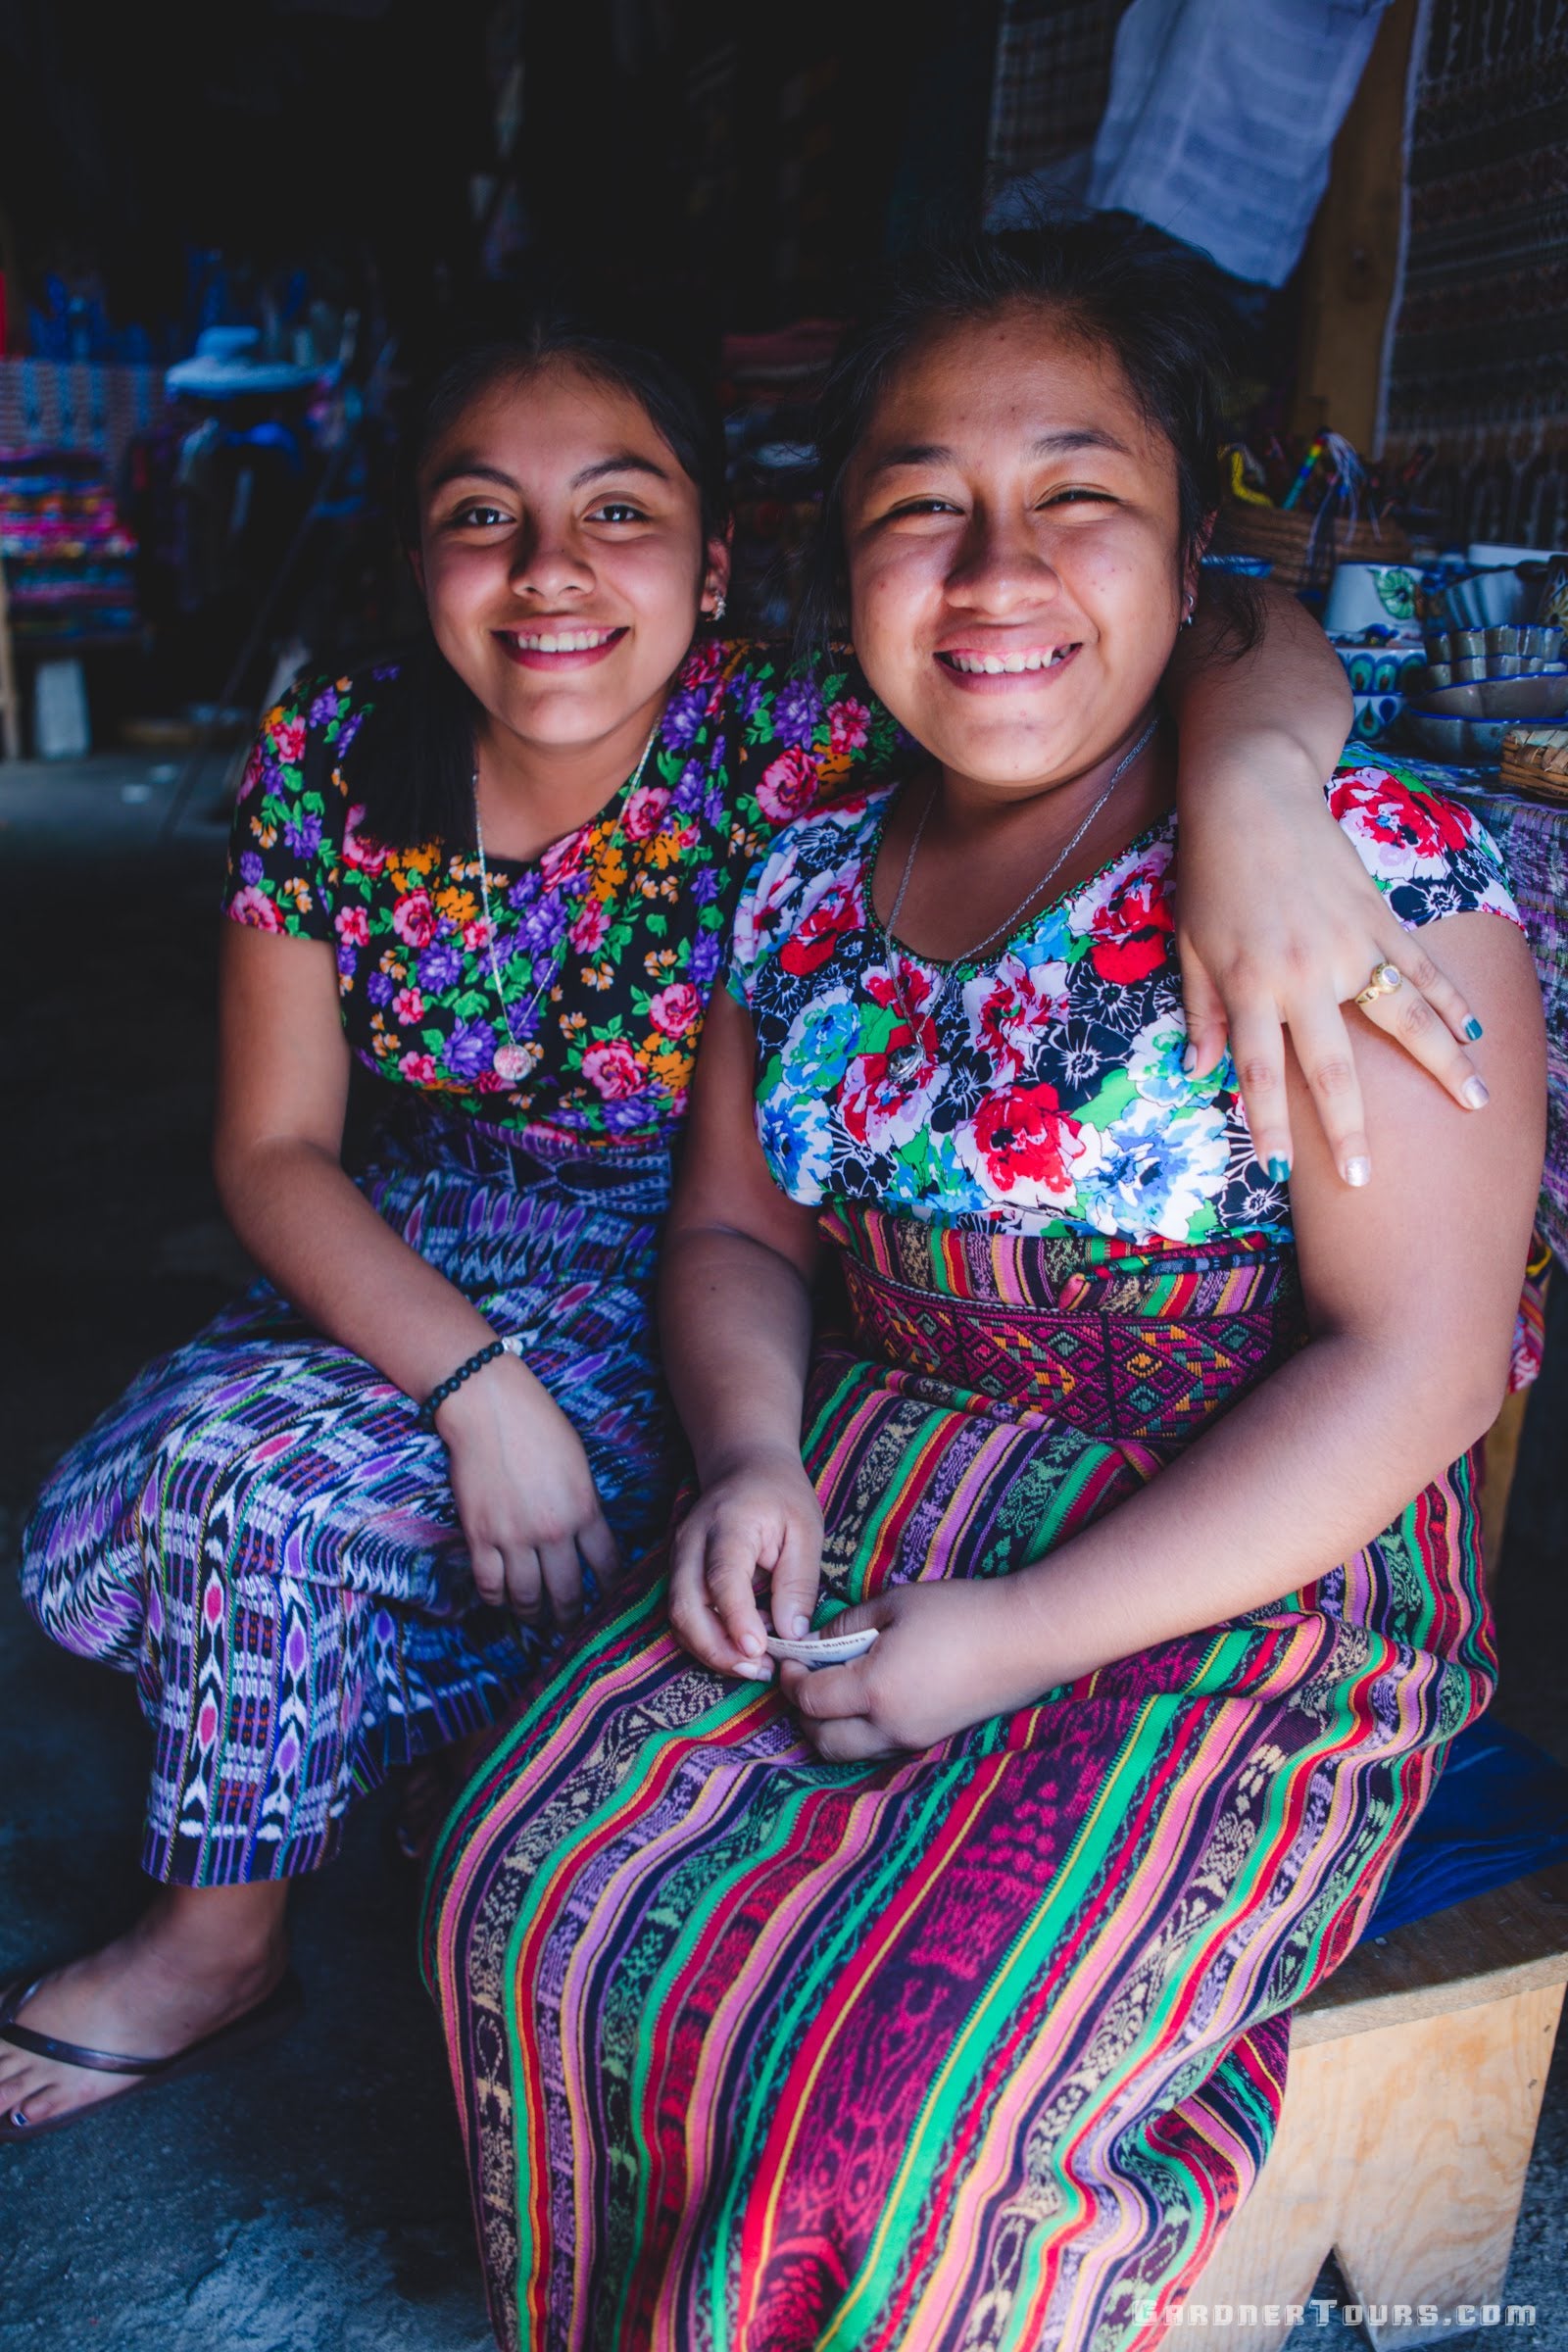 Two Mayan Girls Posing Together in their Traditional Clothing in San Juan La Laguna Lake Atitlan, Guatemala